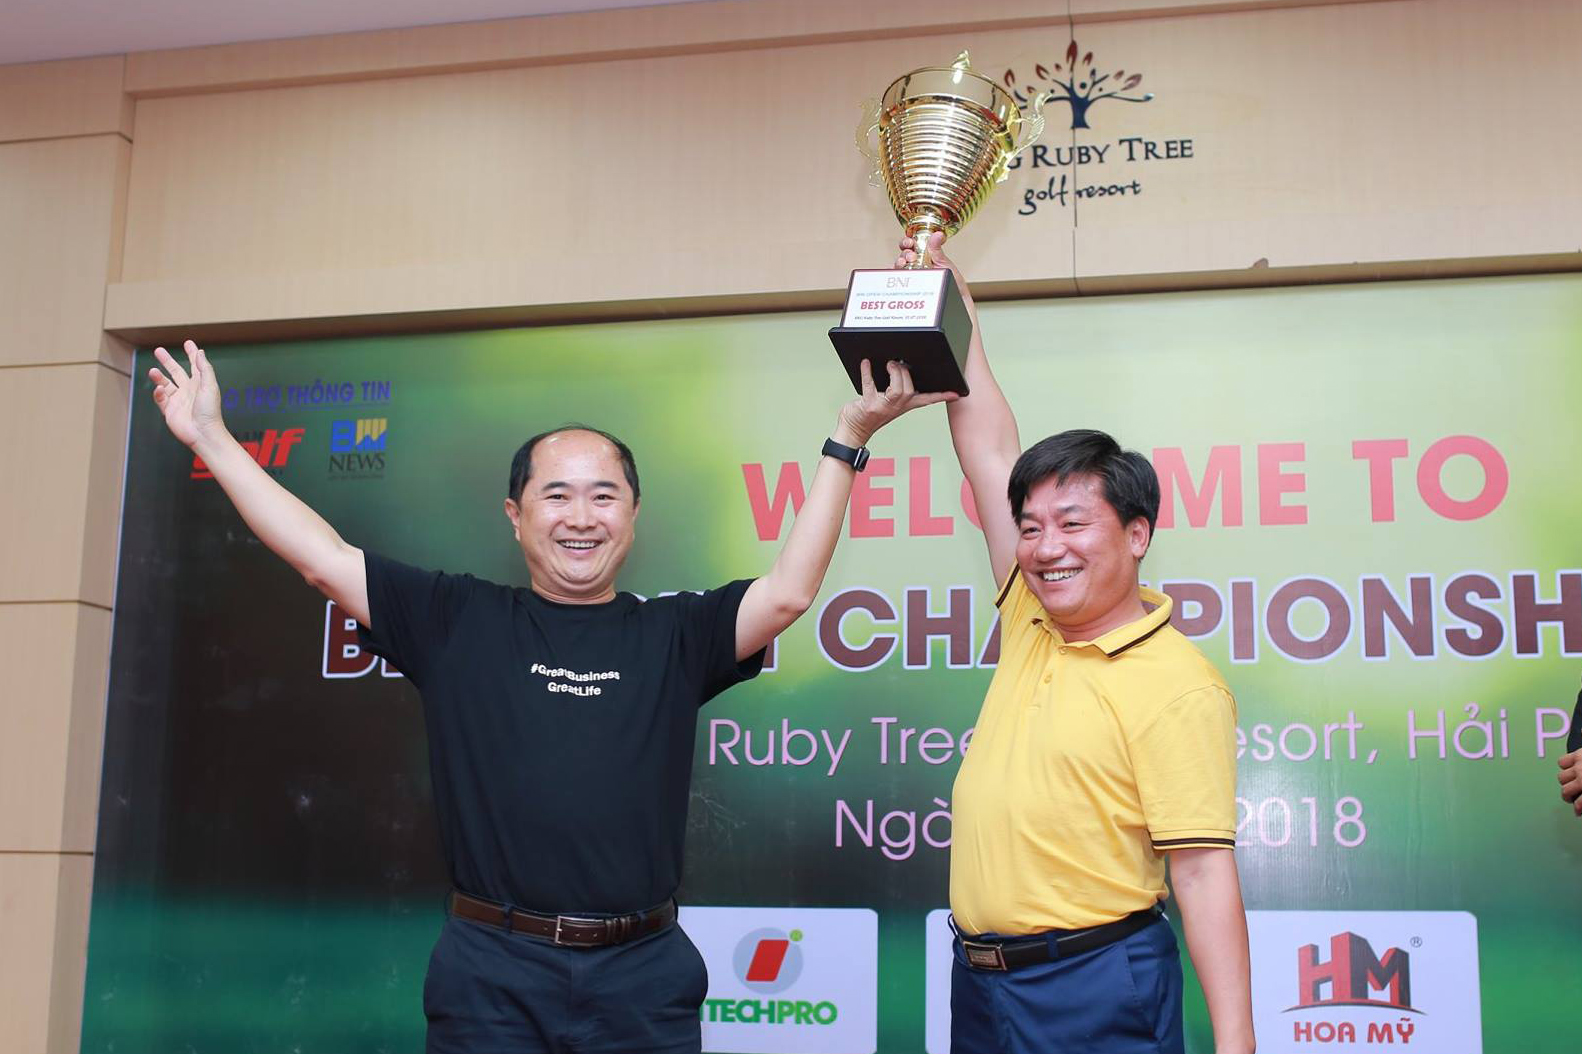 Giải golf BNI Open Championship 2018: Golfer Nguyễn Văn Cường giành giải Best Gross